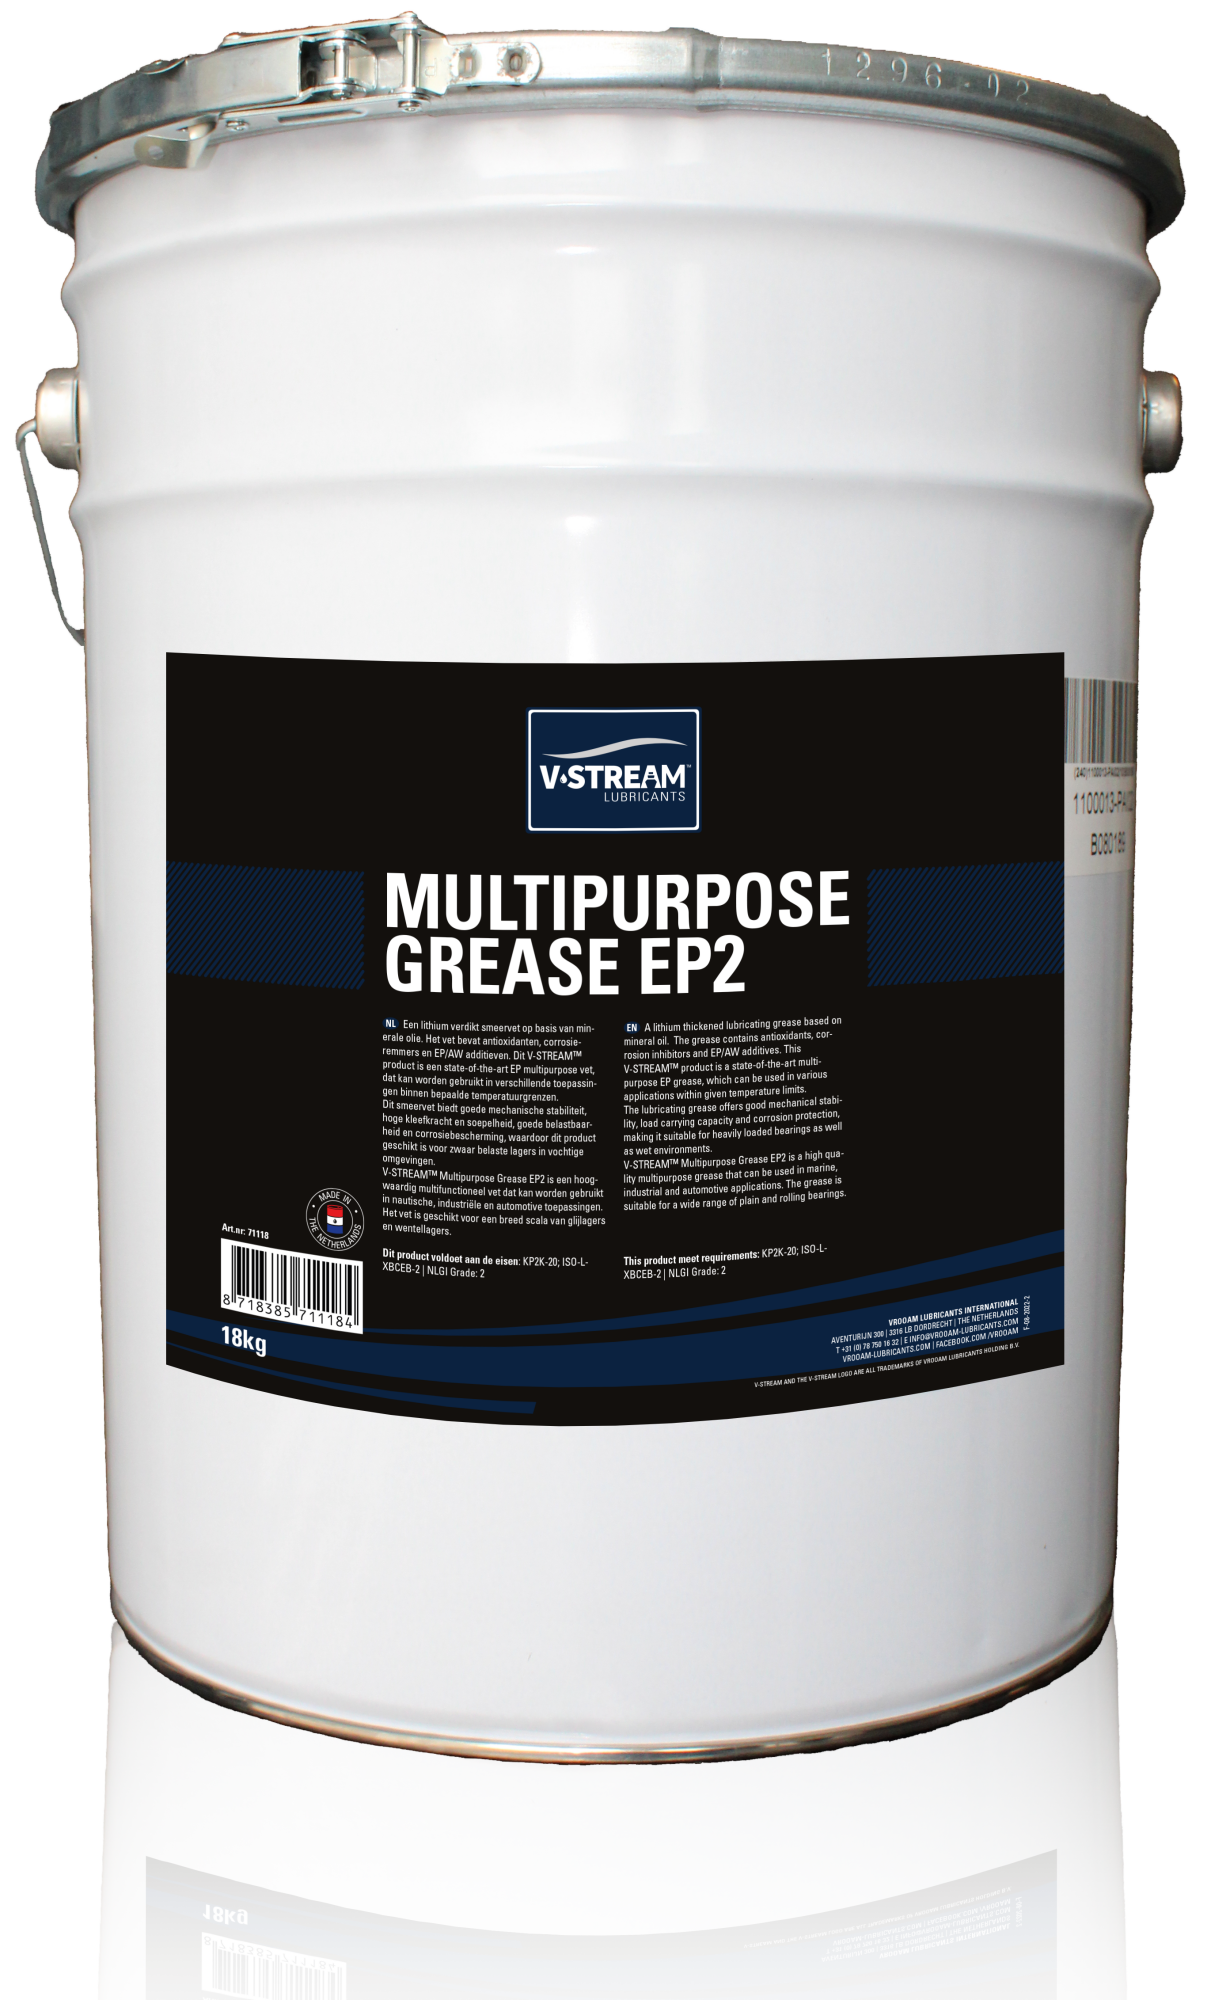 V-STREAM Multipurpose Grease EP2